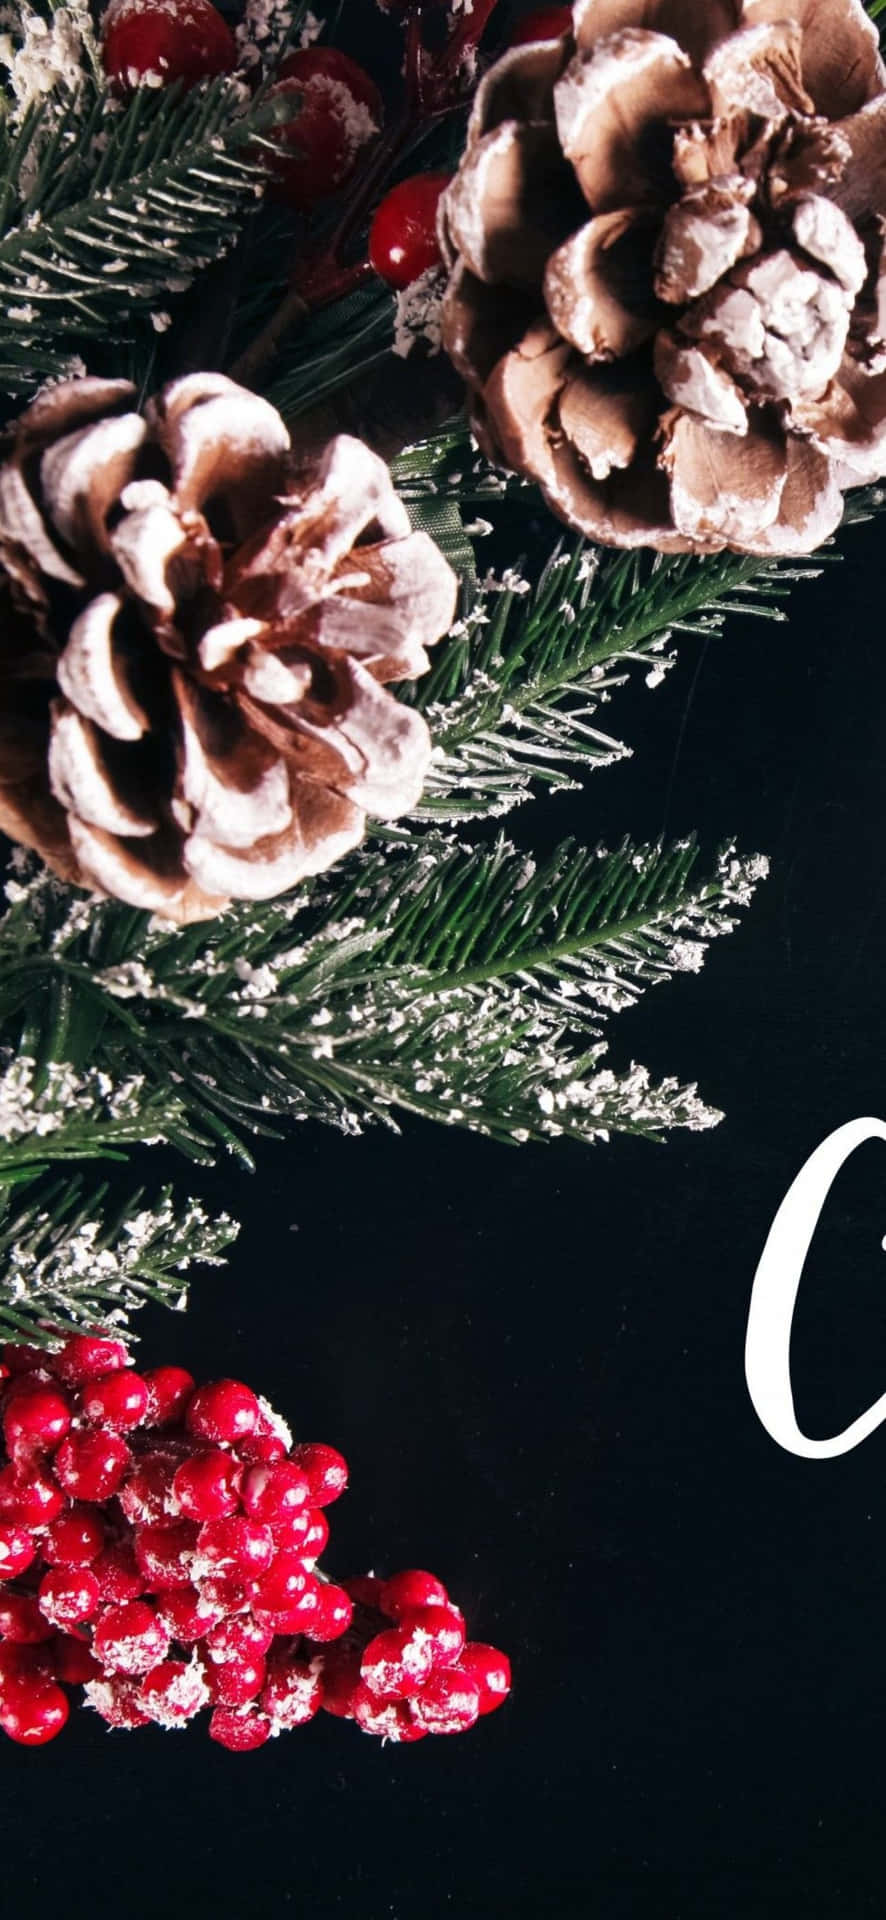 Feieredie Festtagszeit Mit Diesem Bezaubernden Weihnachtsmotiv Als Hintergrundbild Für Dein Iphone.